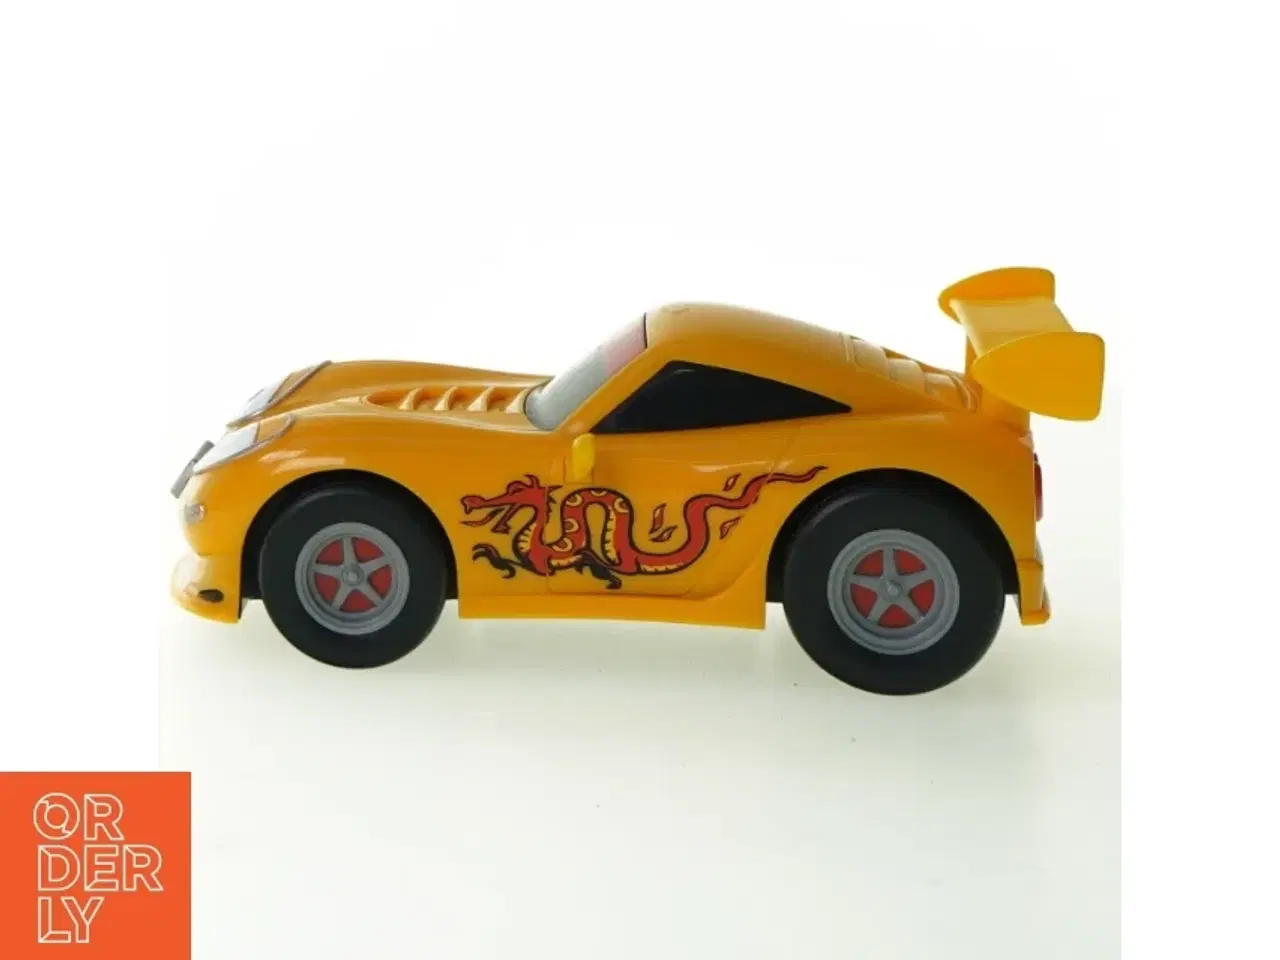 Billede 1 - Bil fra Top Toy (str. 18 x 4 cm)